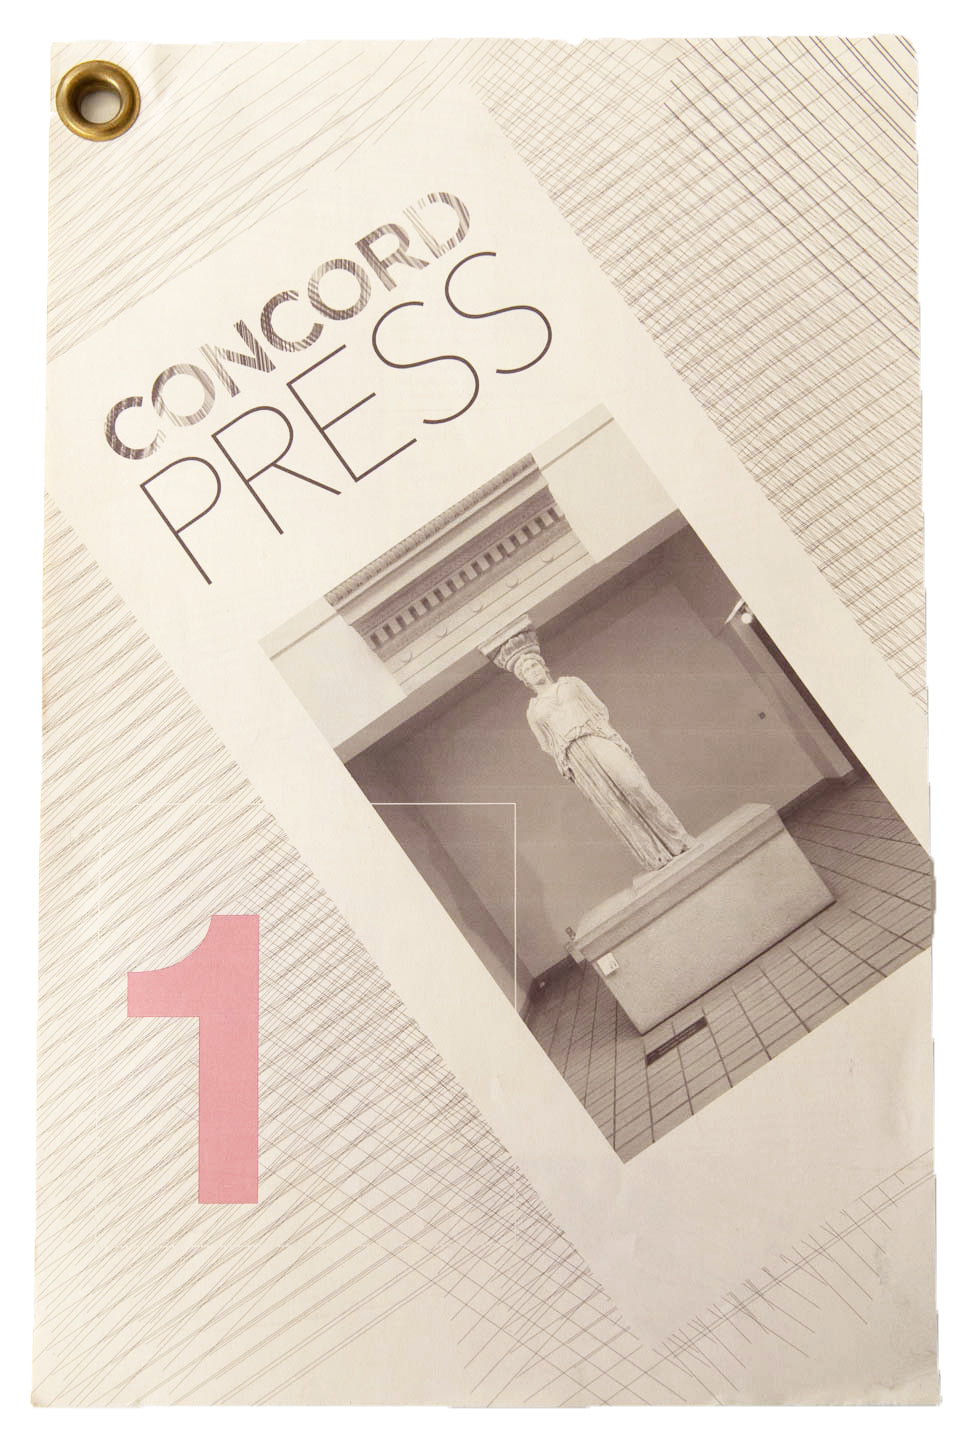 CONCORD PRESS 1